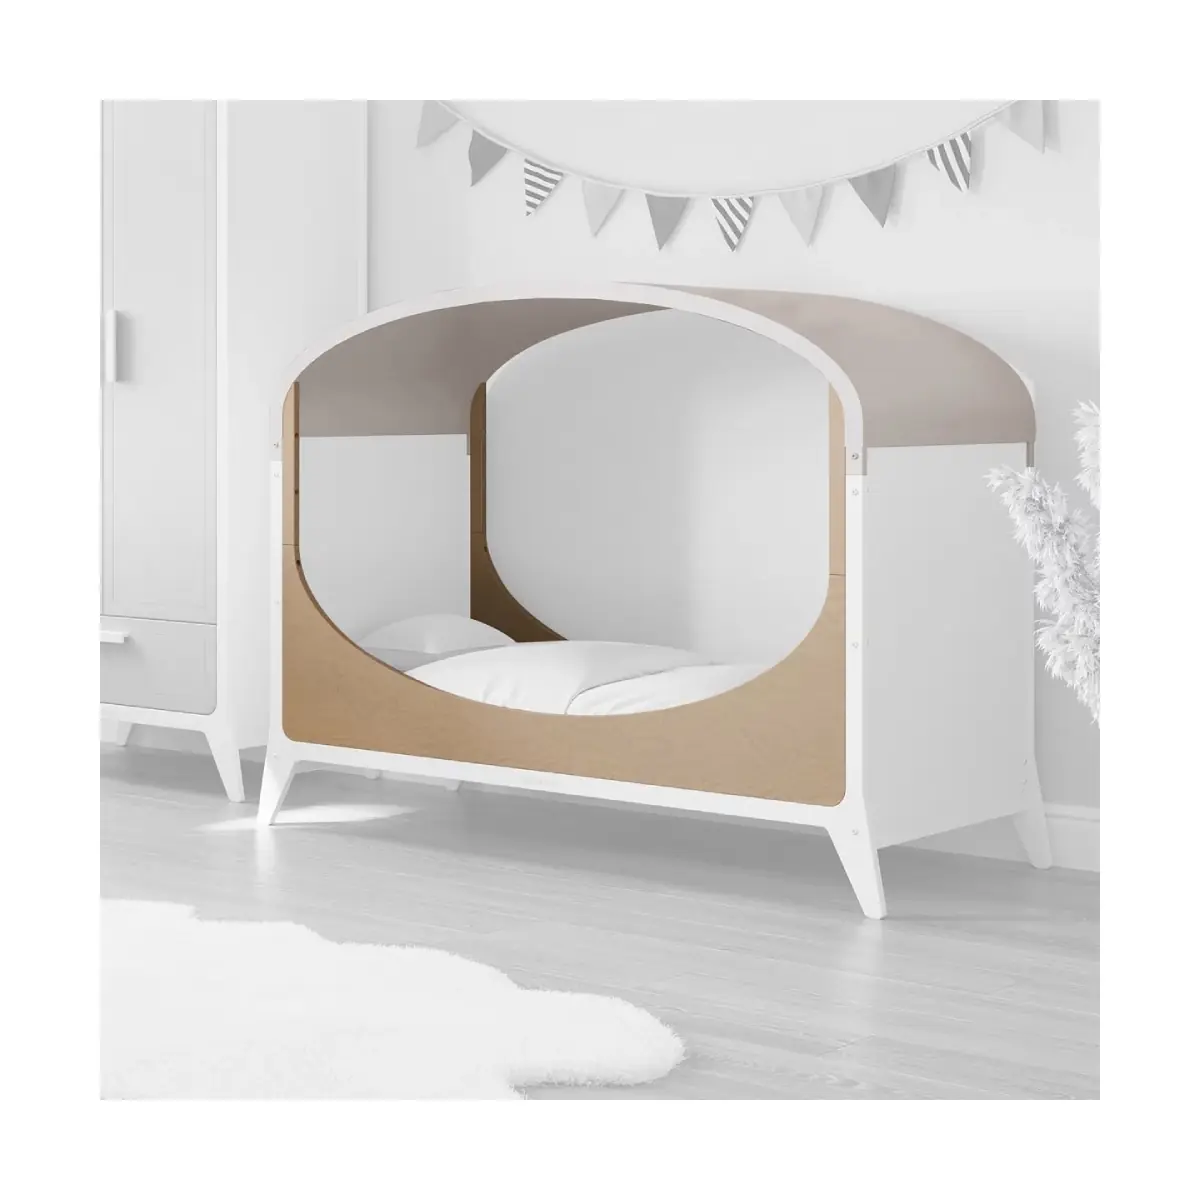 SnuzFino Cot Bed Toddler Kit